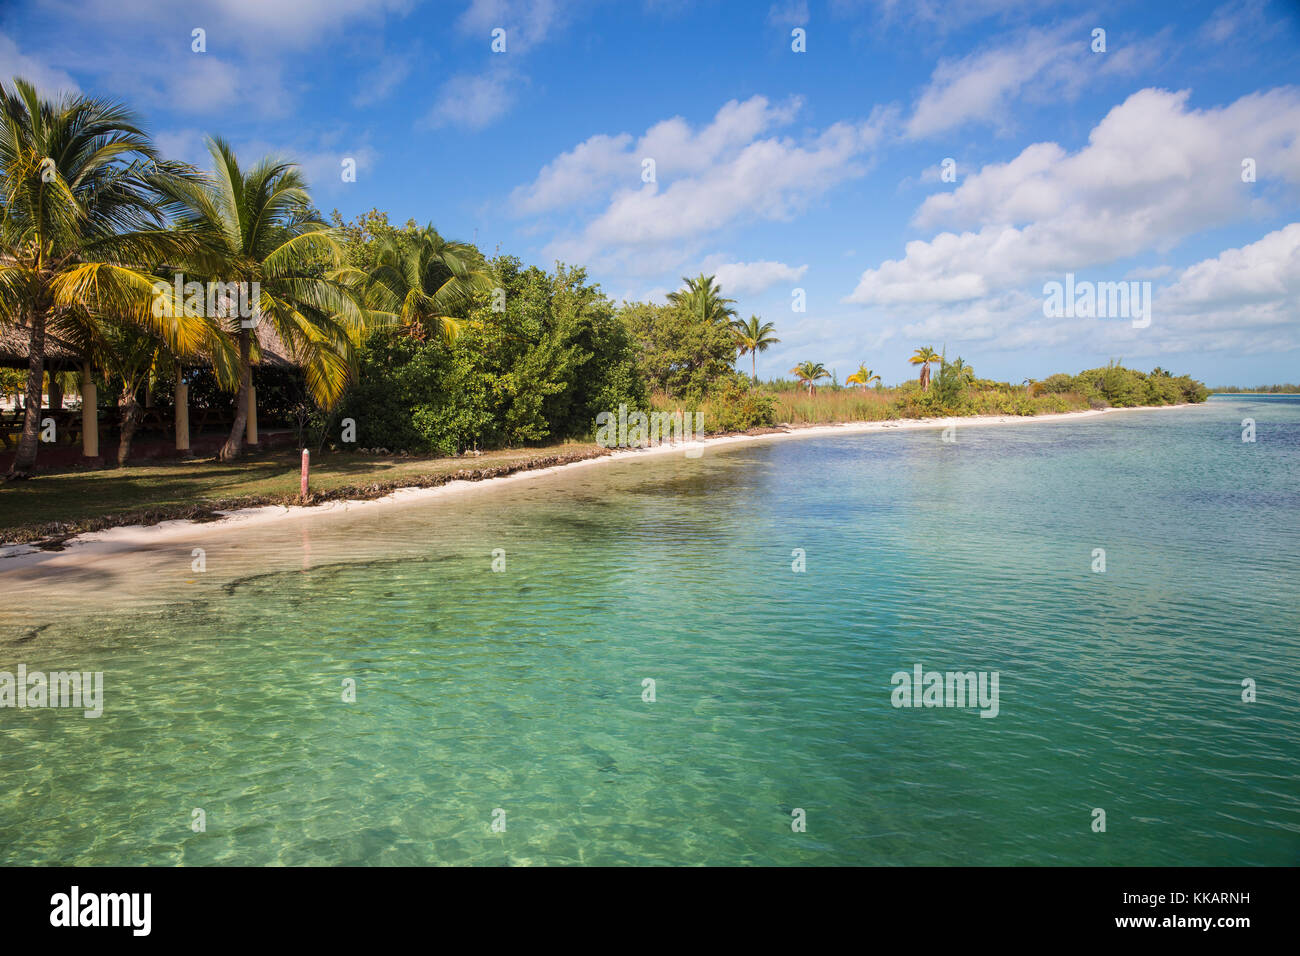 Cayo Largo De Sur, Isla de la Juventud, Cuba, West Indies, Caribbean, Central America Stock Photo